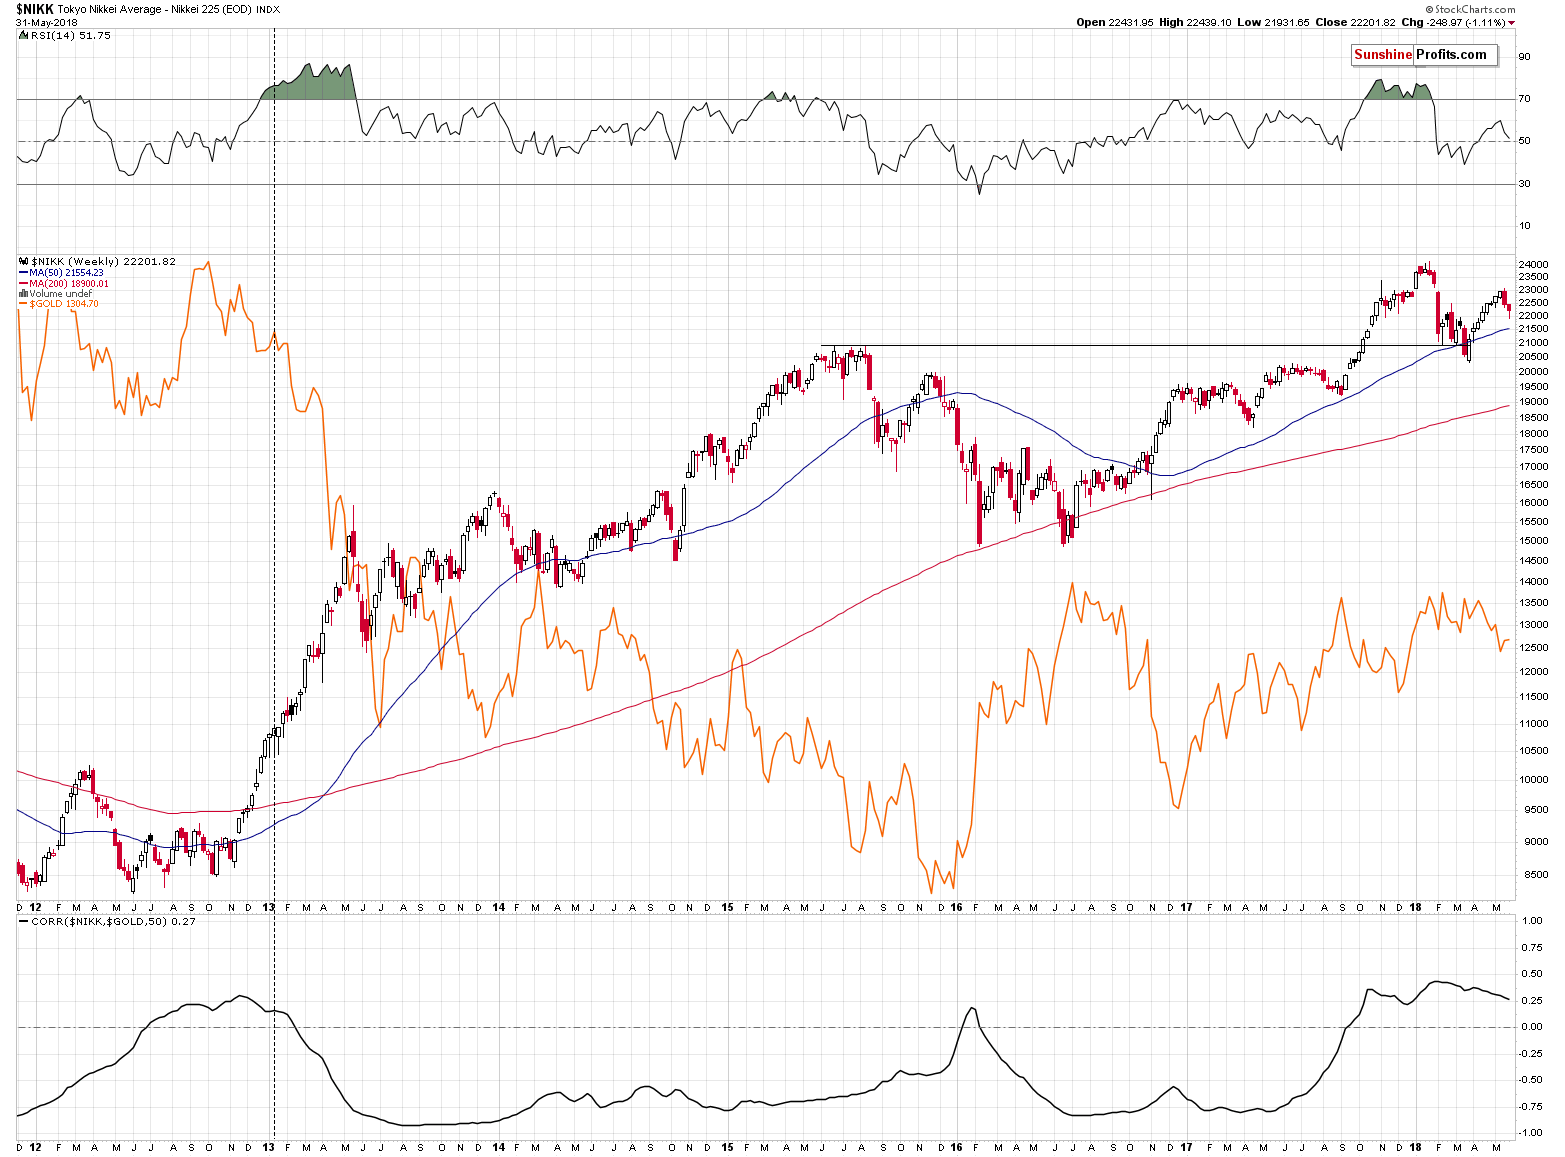 Gold and Nikkei 225 Index (NIKK)